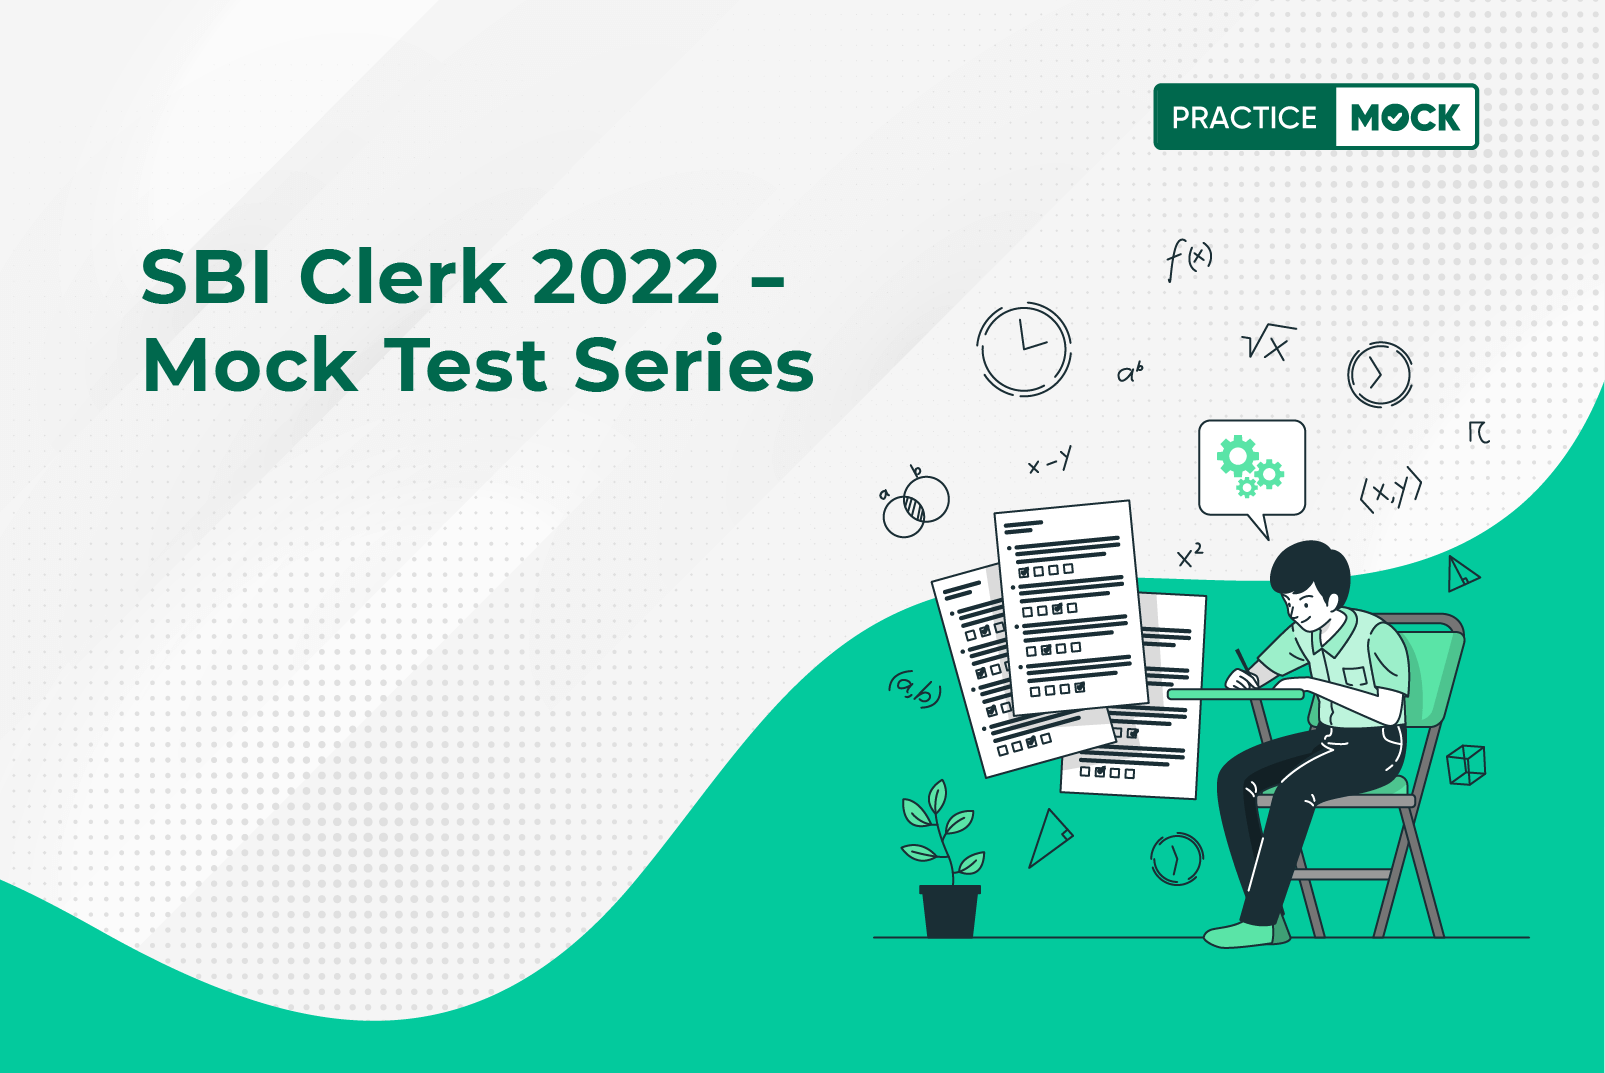 SBI Clerk Preparation 2022: Section-Wise Mock Test Challenge